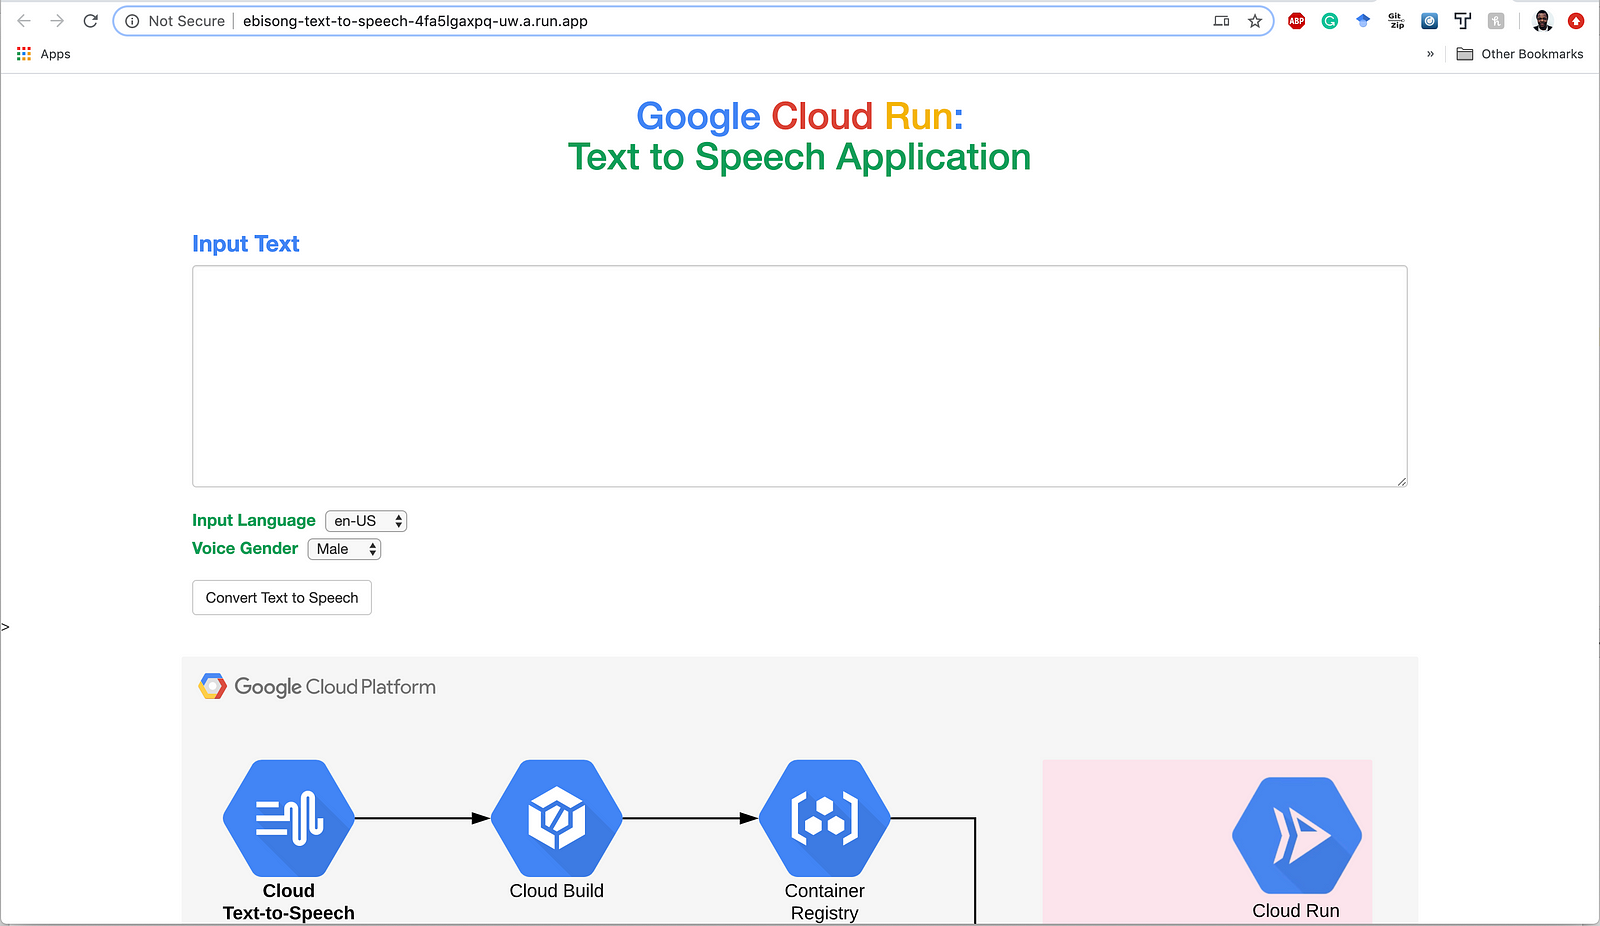 Text-to-Speech application running on Cloud Run.